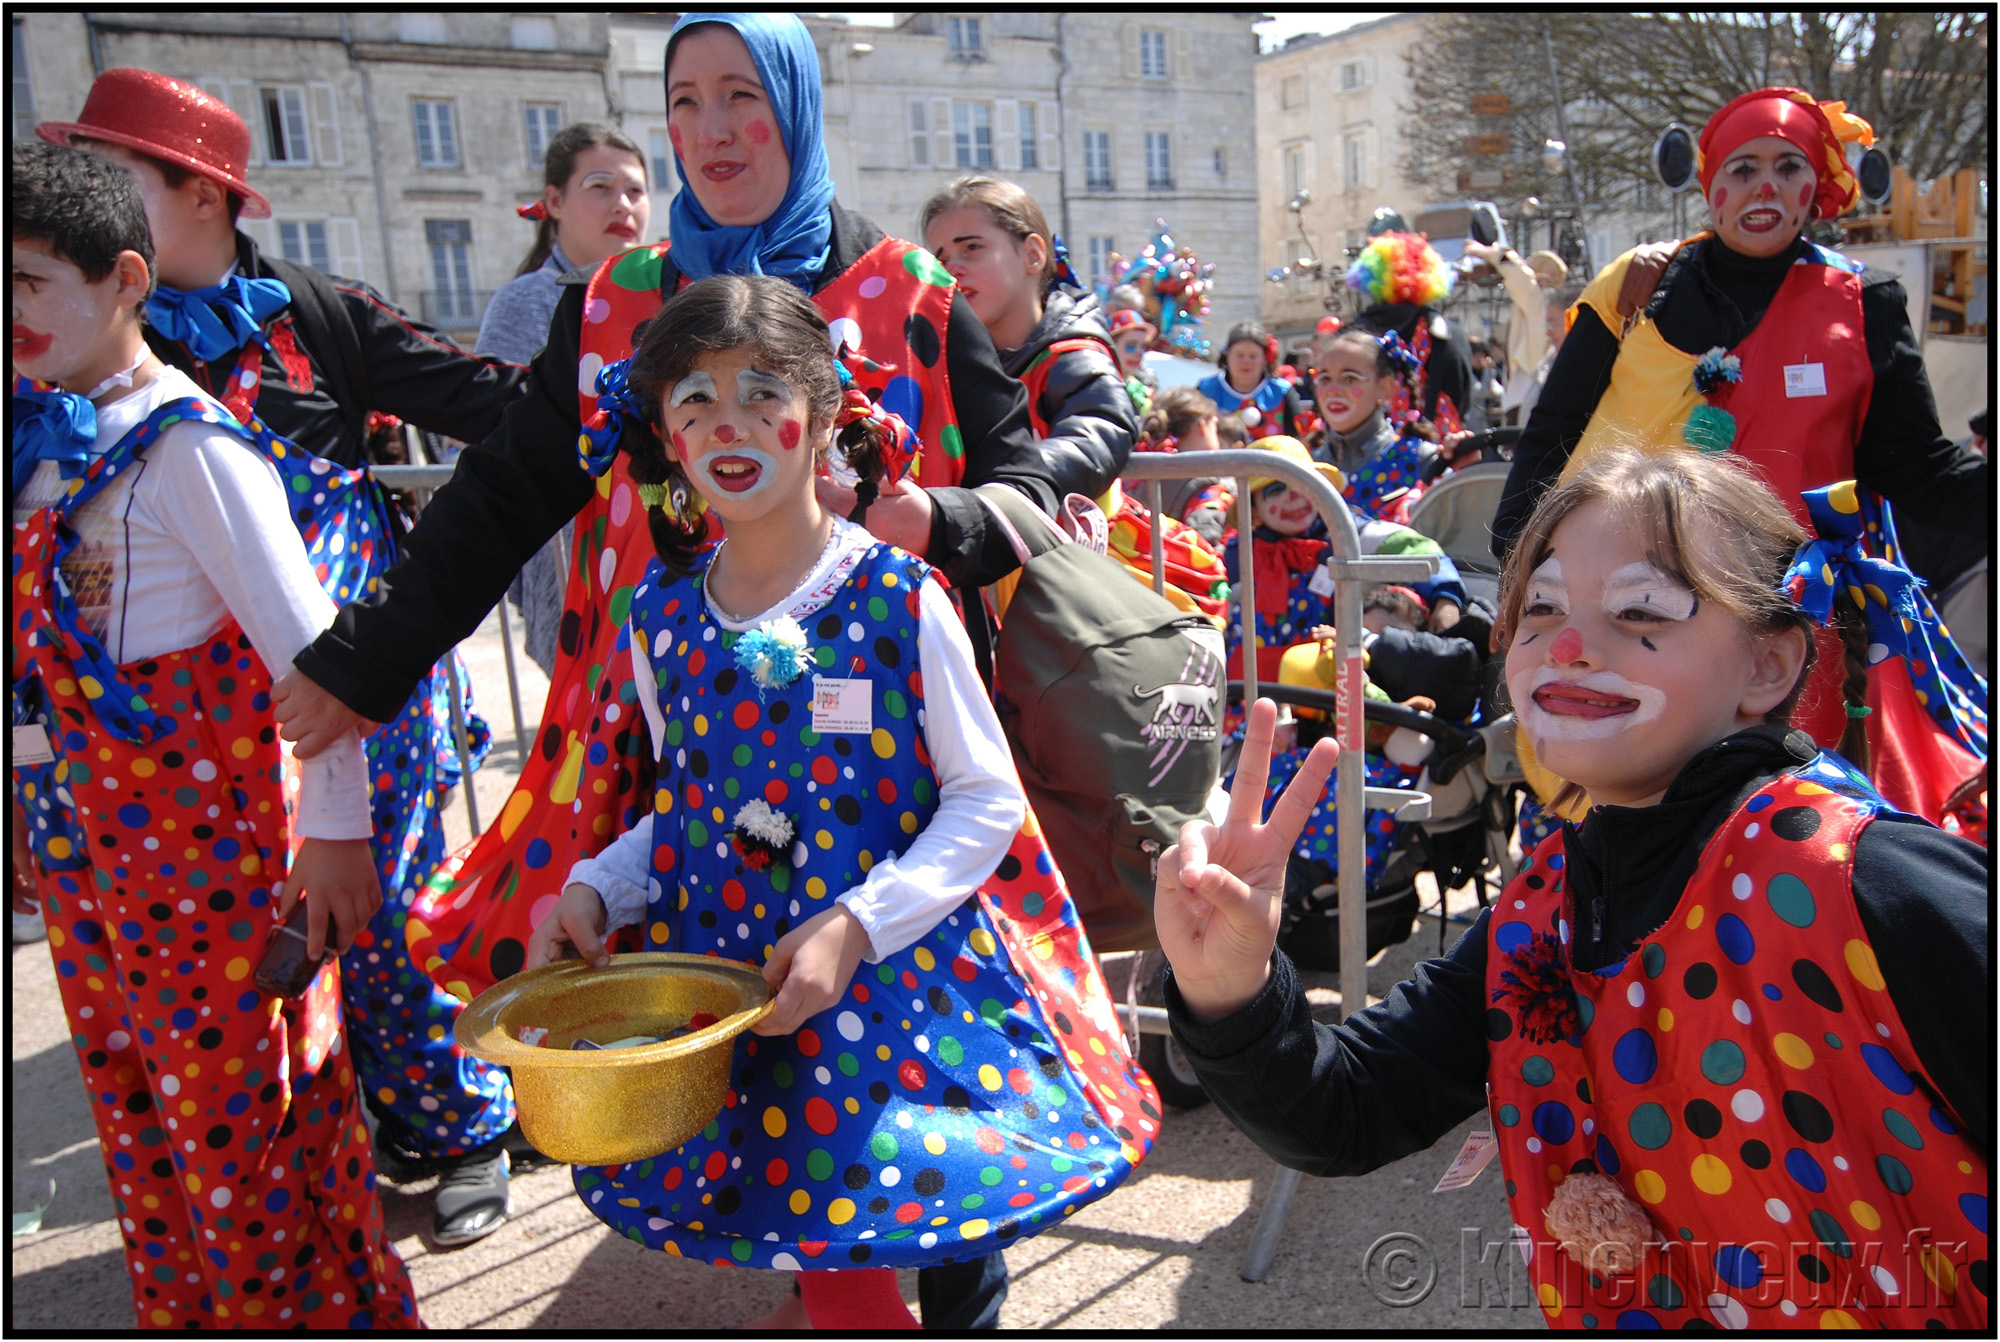 kinenveux_03_carnaval2015lr.jpg - Carnaval des Enfants 2015 - La Rochelle